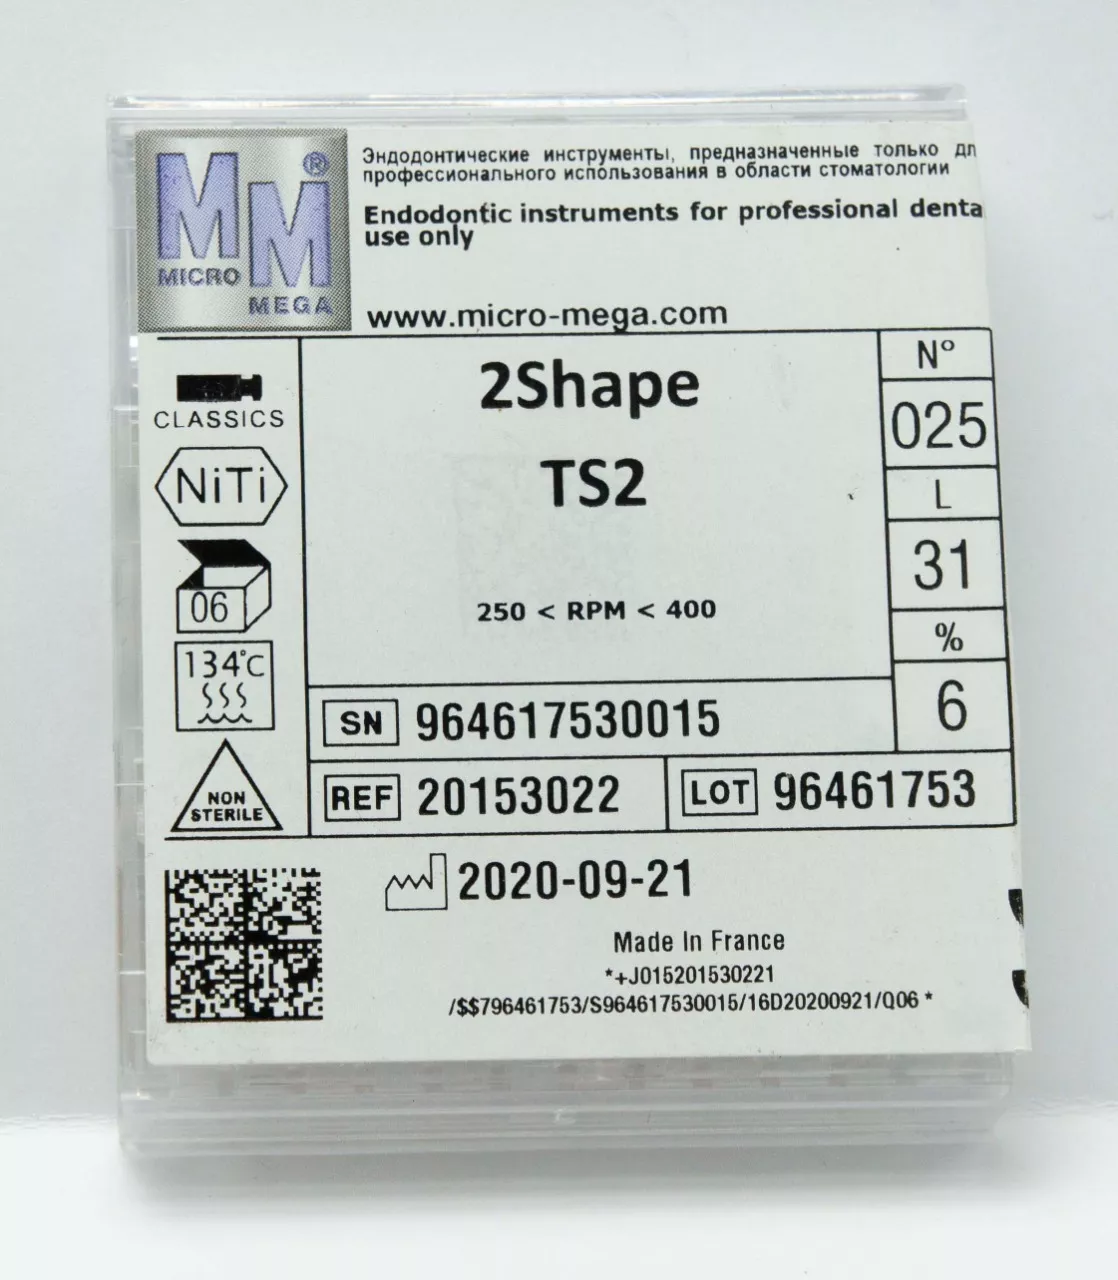 2Shape TS2 N25 6% L31 - инструменты эндодонтические